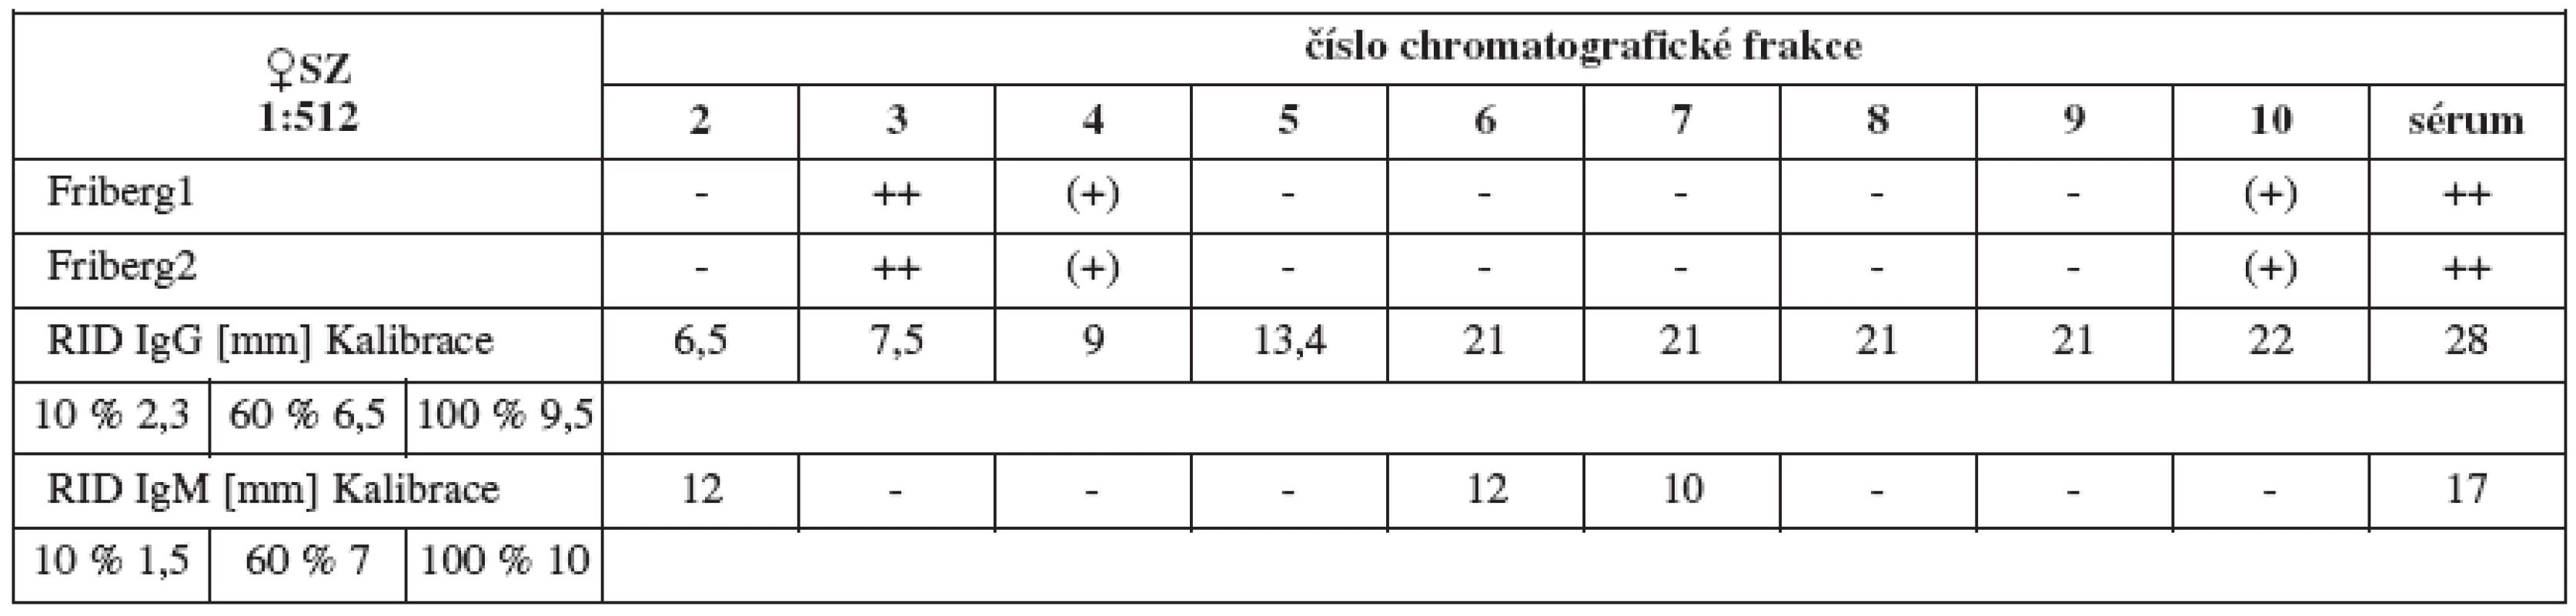 Srovnání výsledků Fribergova testu pro jednotlivé chromatografické frakce séra SZ a radiální imunodifuze